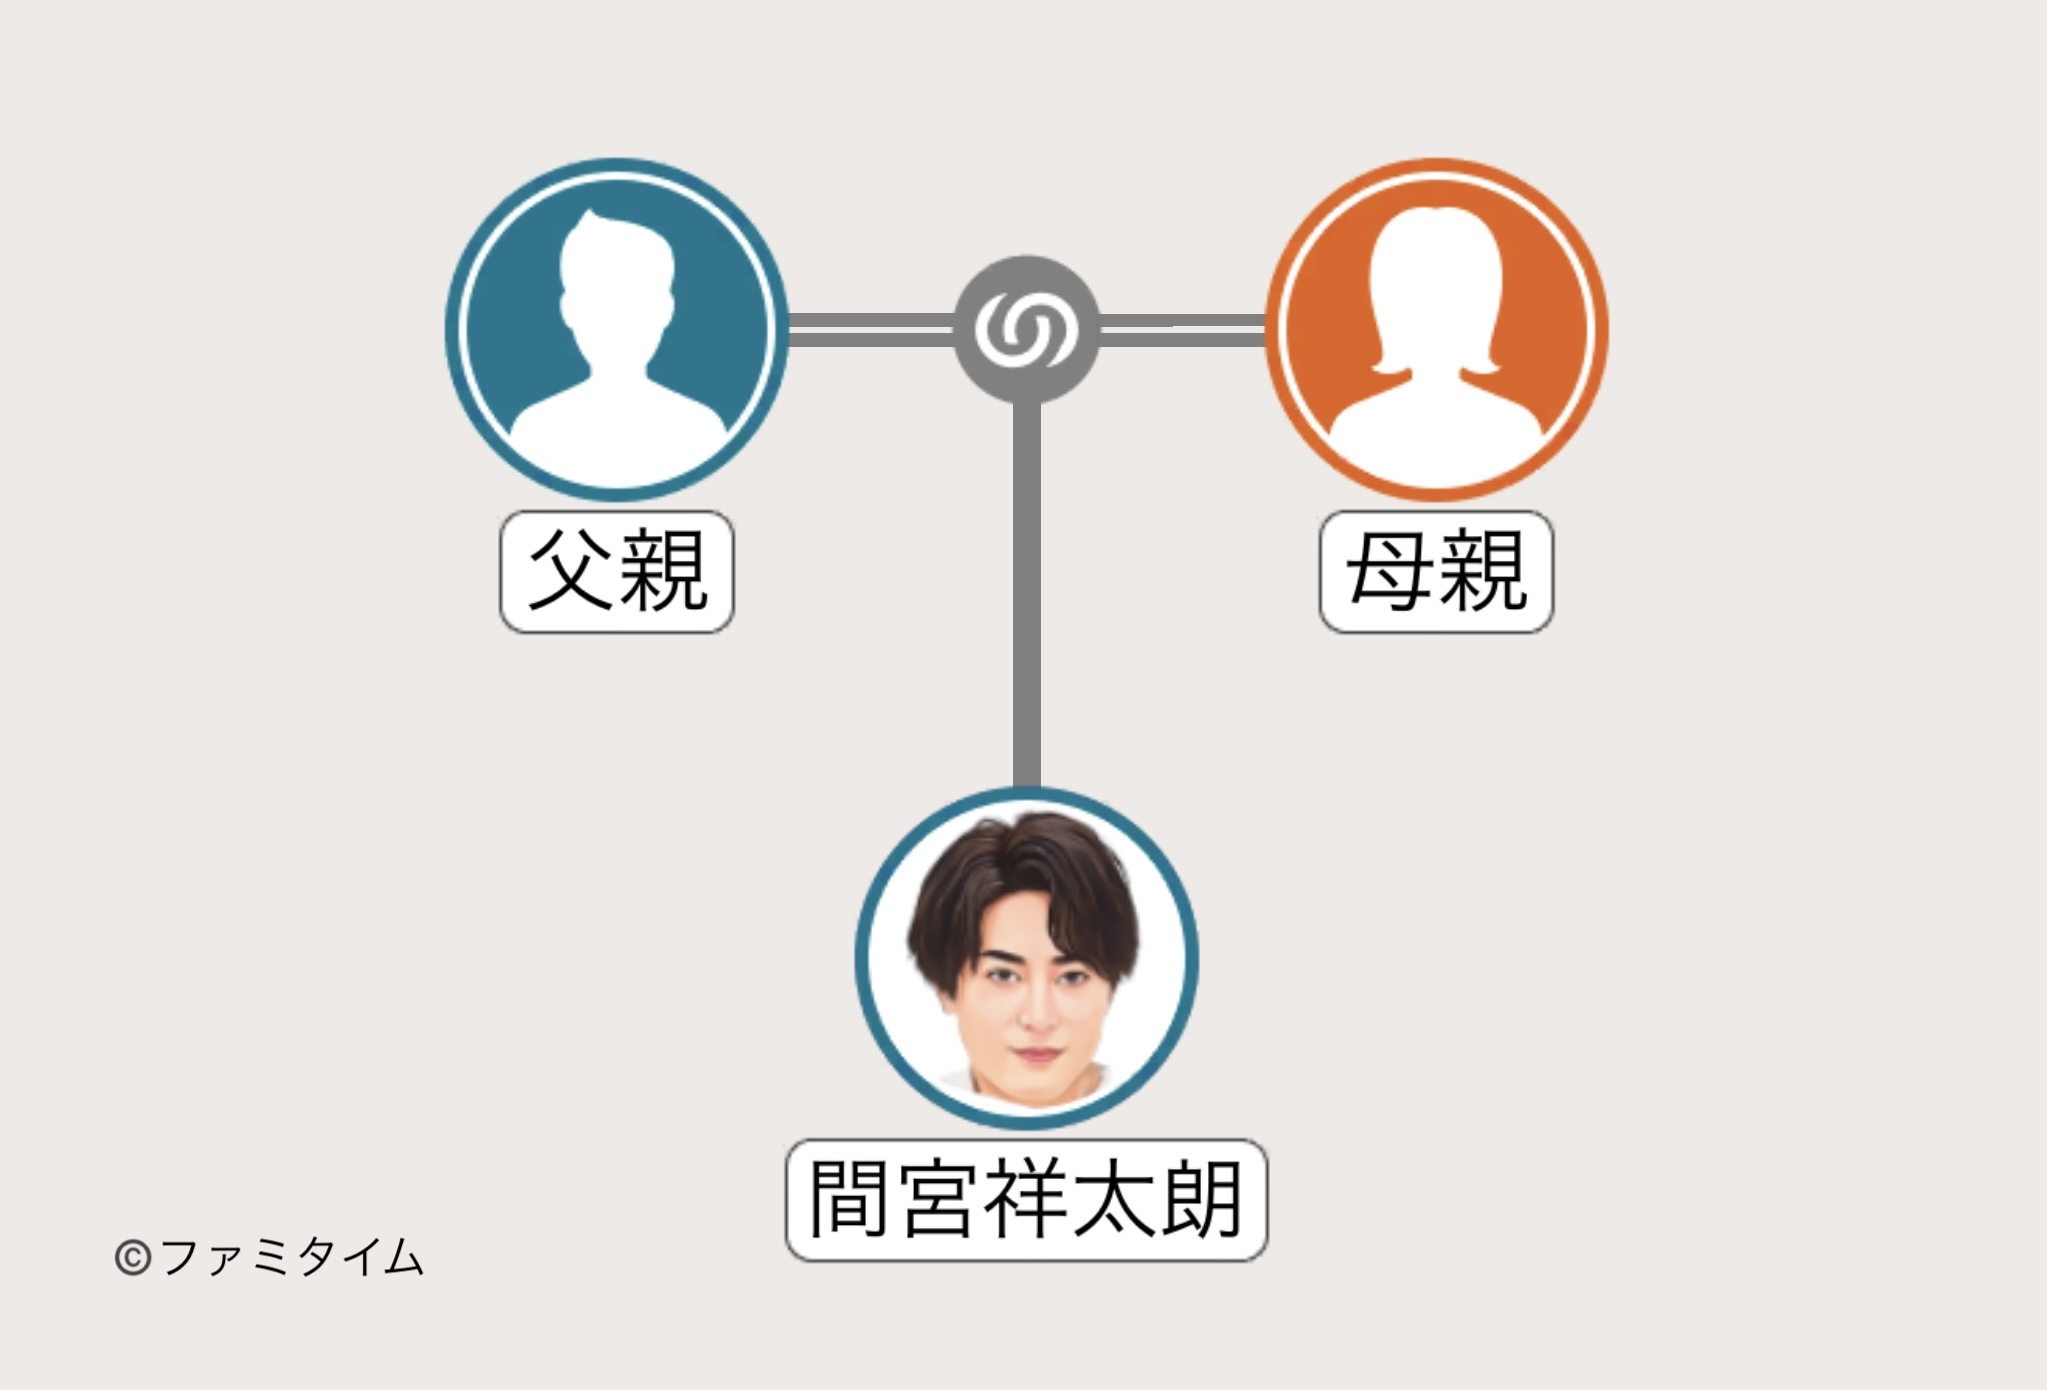 間宮祥太朗の家系図